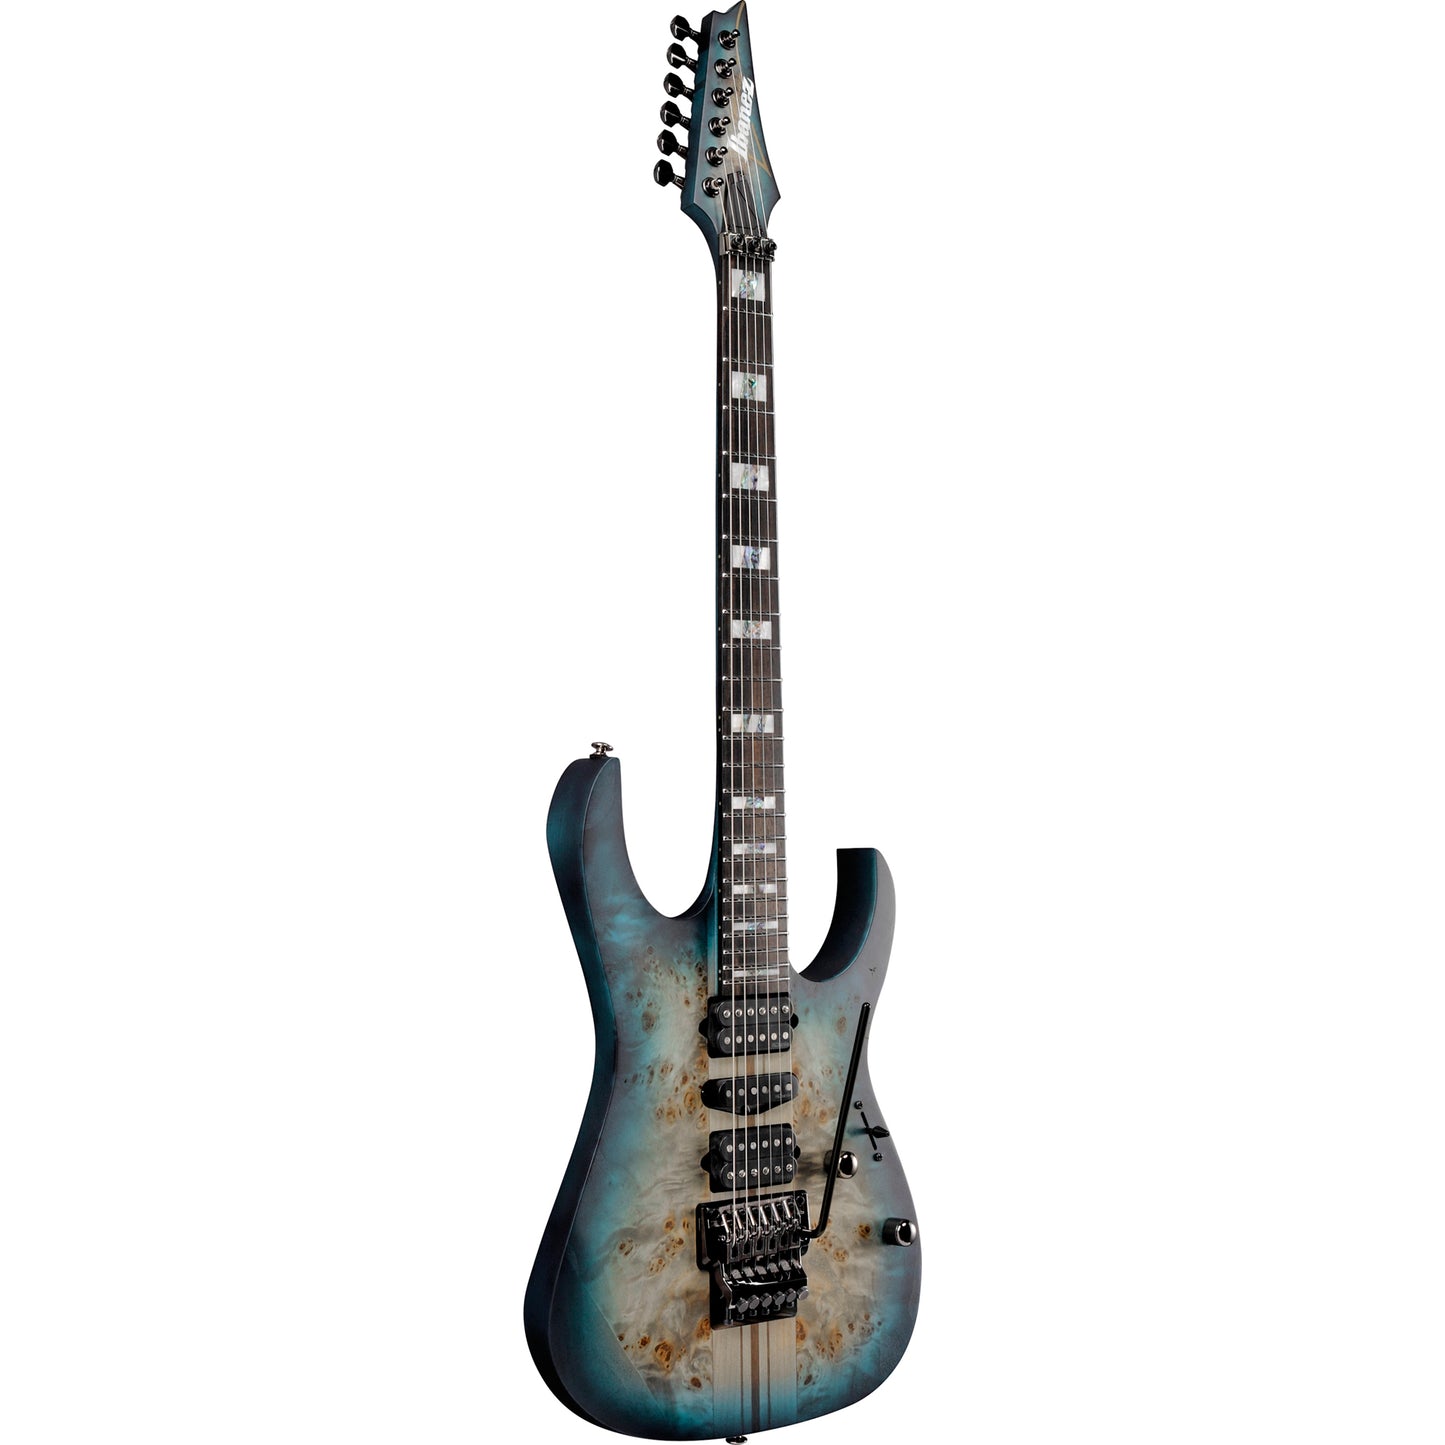 Ibanez RG Premium 6 String Electric Guitar - Cosmic Blue Starburst Flat